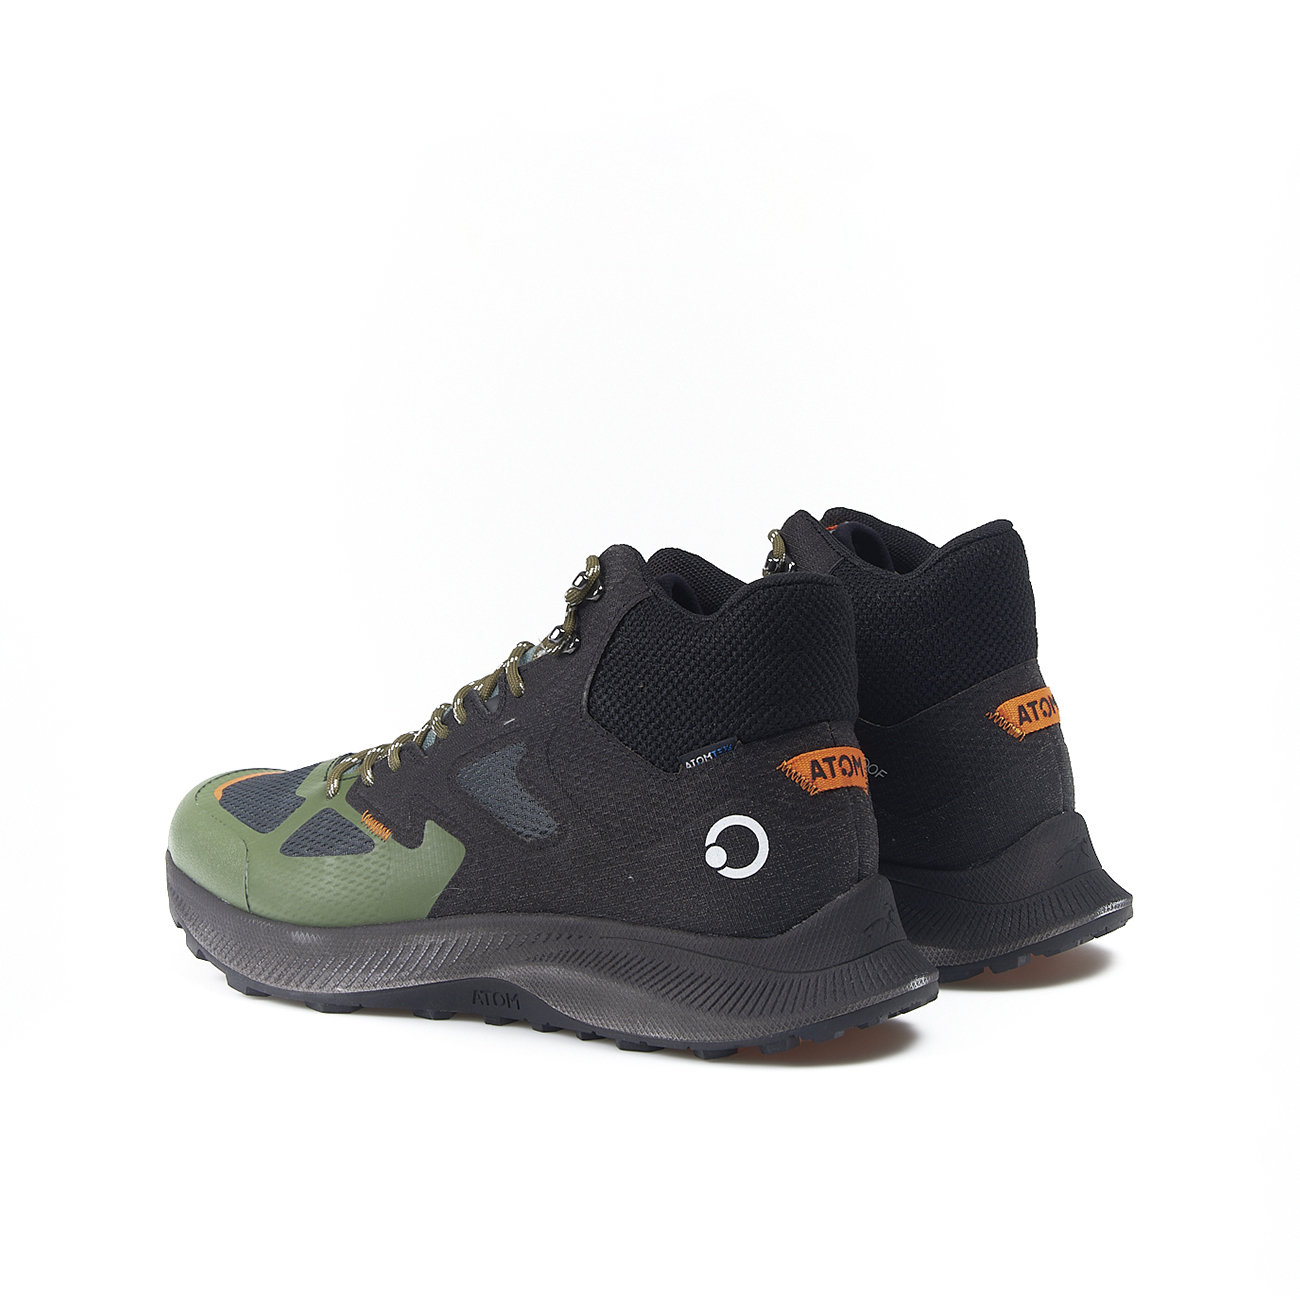 Zapatillas Abotinadas Atom By Fluchos Terra At118 - Verde - Sneakers Para Hombre  MKP